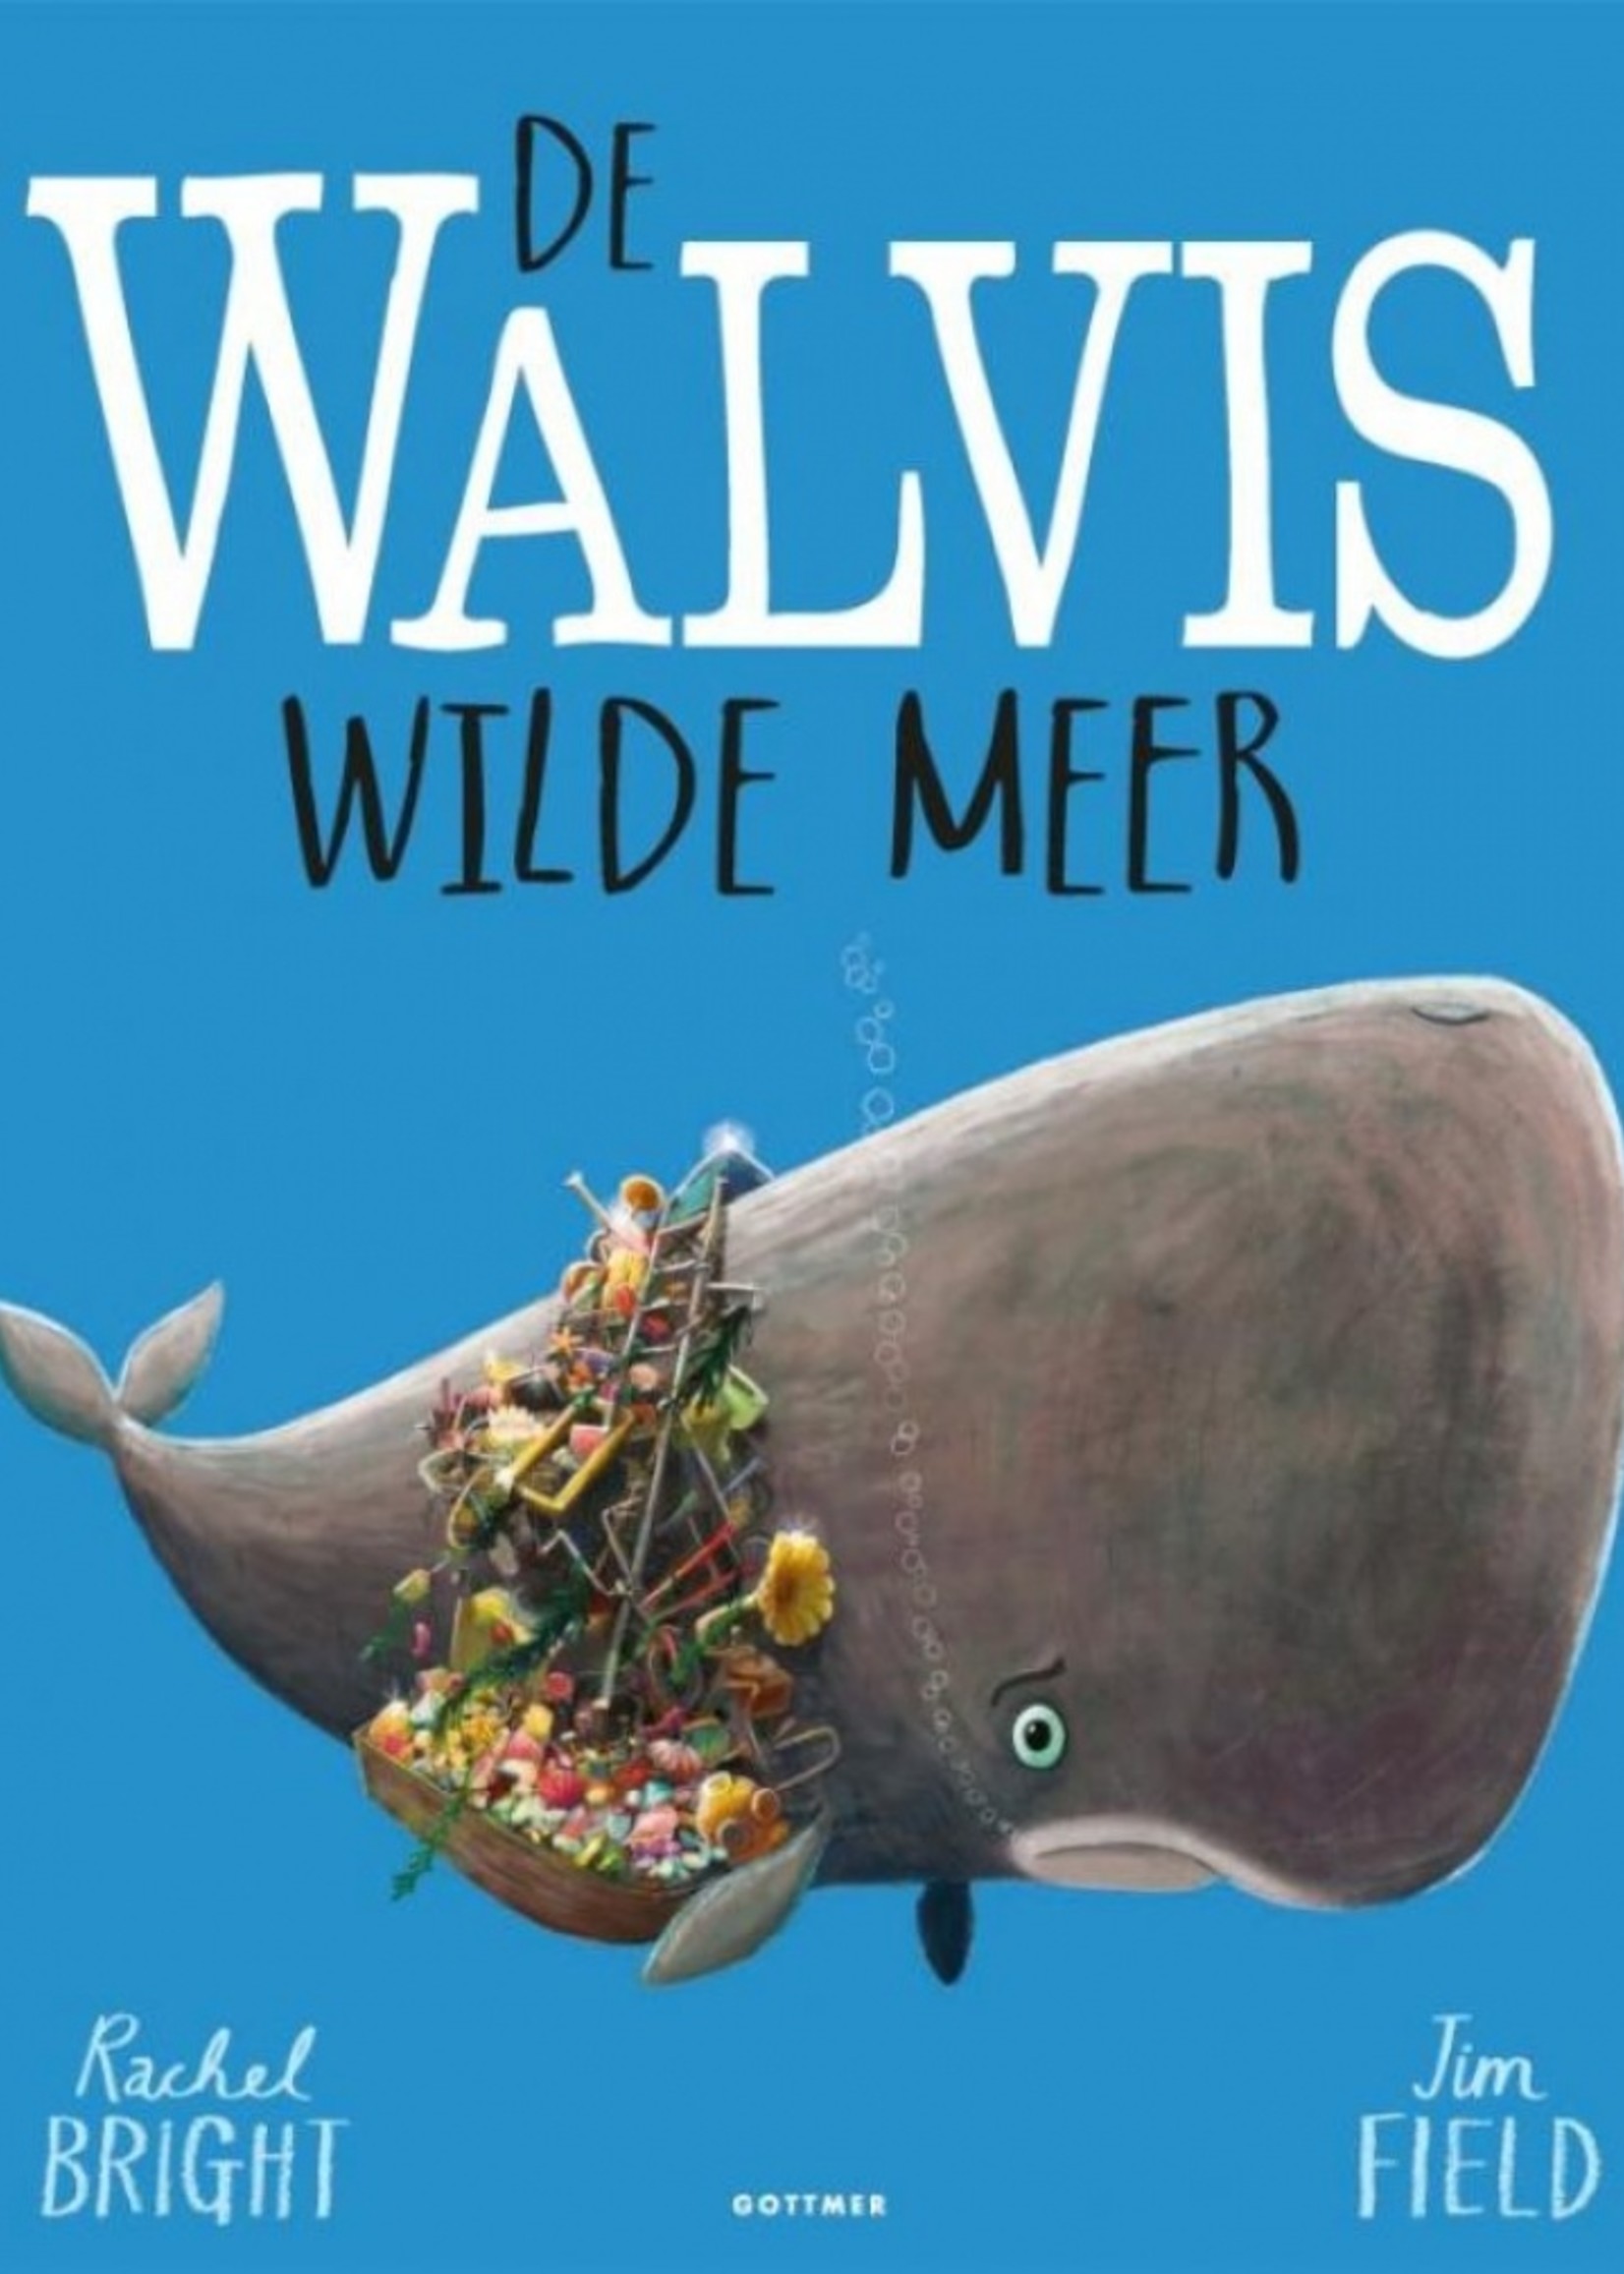 De Walvis wilde meer